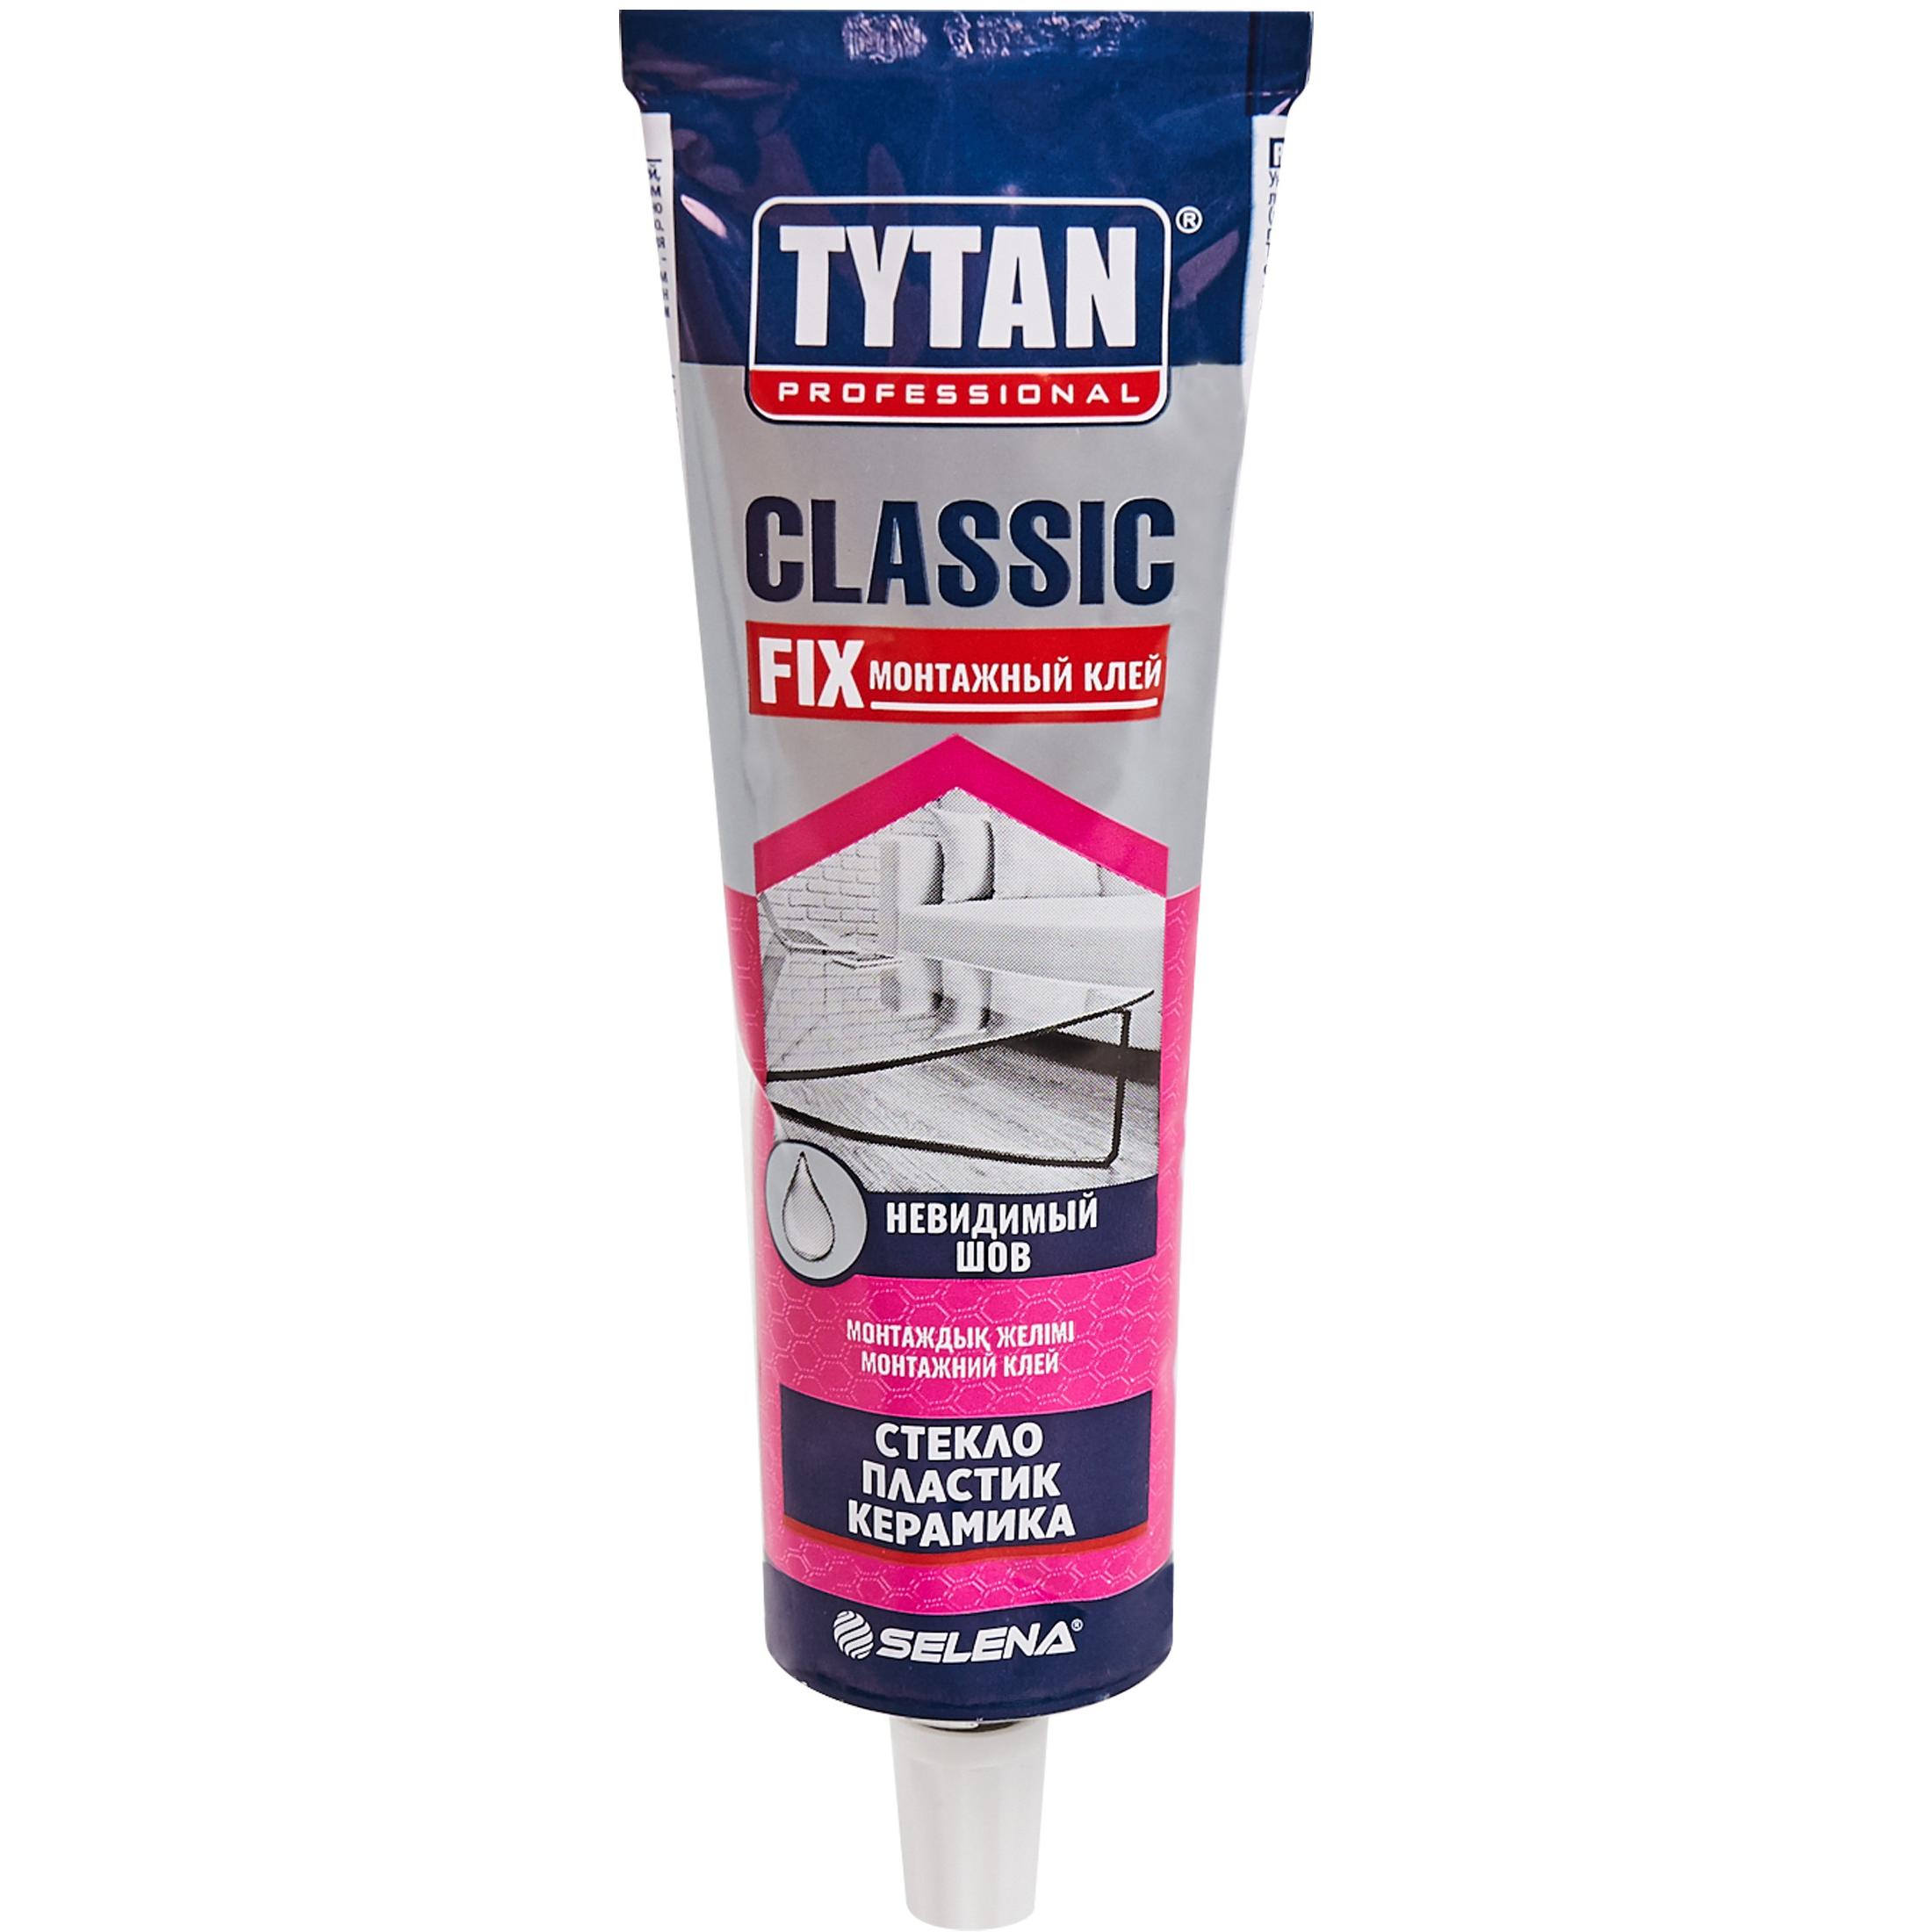 Tytan classic fix прозрачный. Клей монтажный Tytan Classic Fix, 100 мл. Tytan professional Classic Fix монтажный клей. Монтажный клей 1 Титан Классик. Tytan Classic Fix клей монтажный (бесцветный) 310мл.